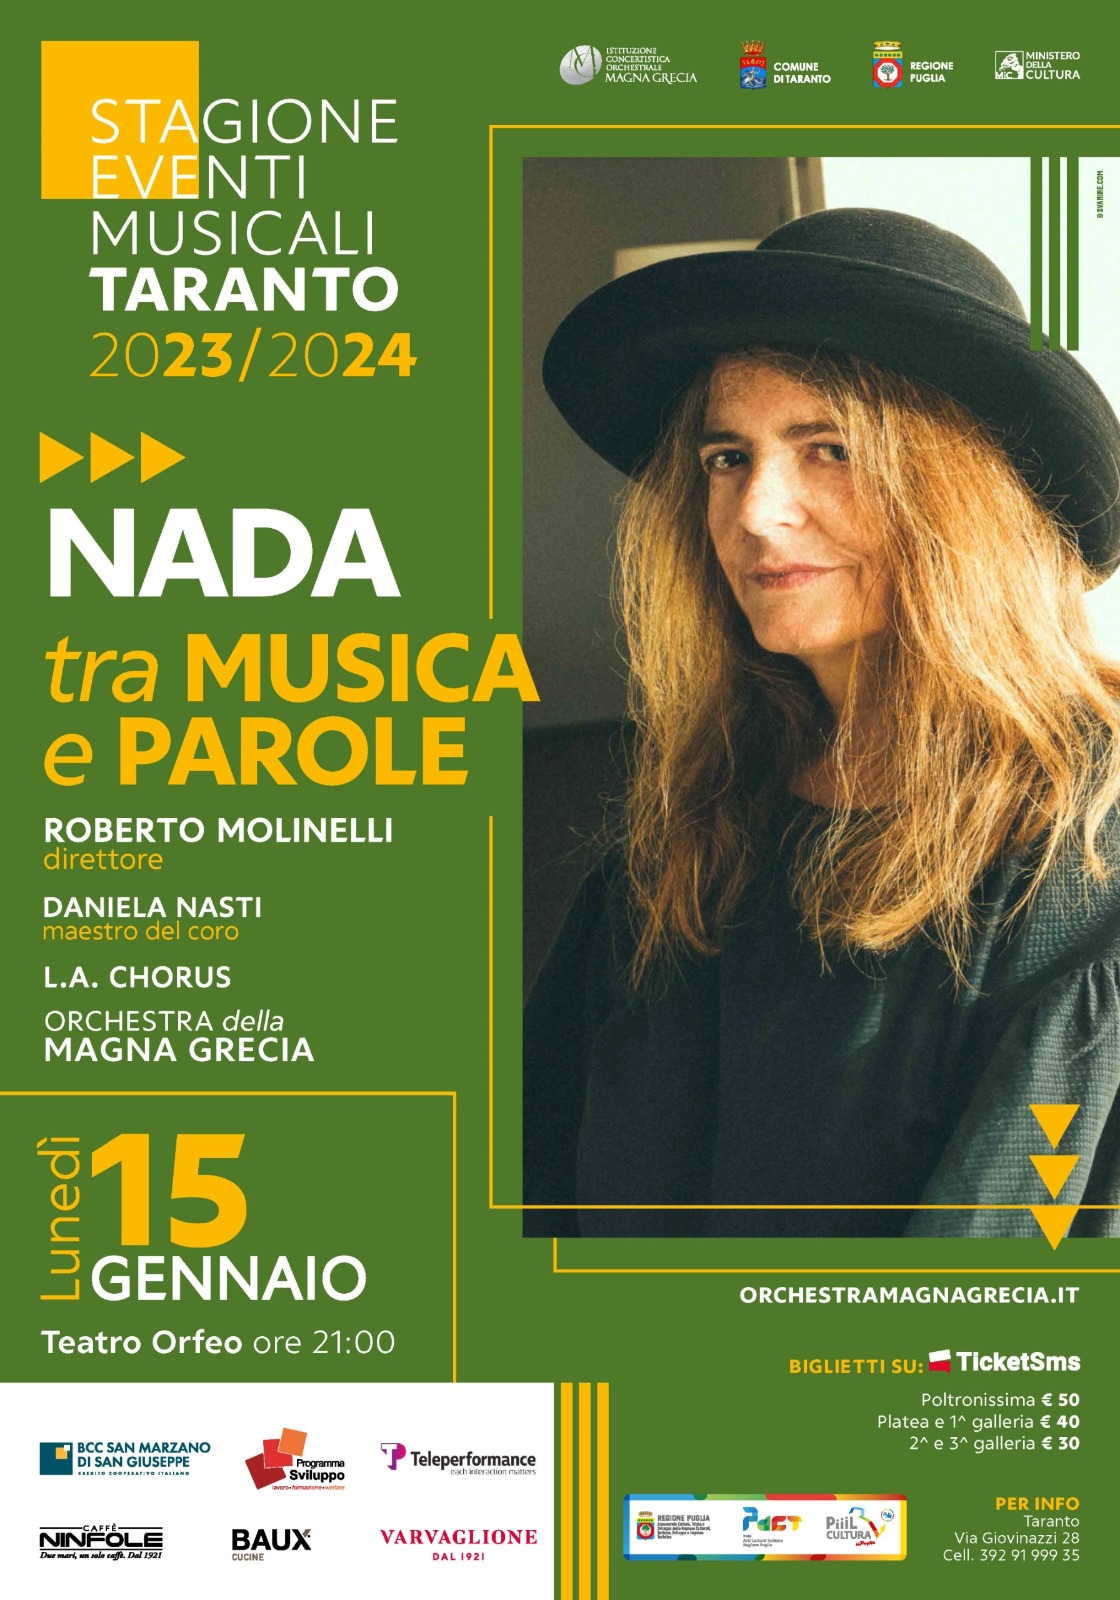 Orchestra Magna Grecia – Nada a Matera, Molfetta e Taranto